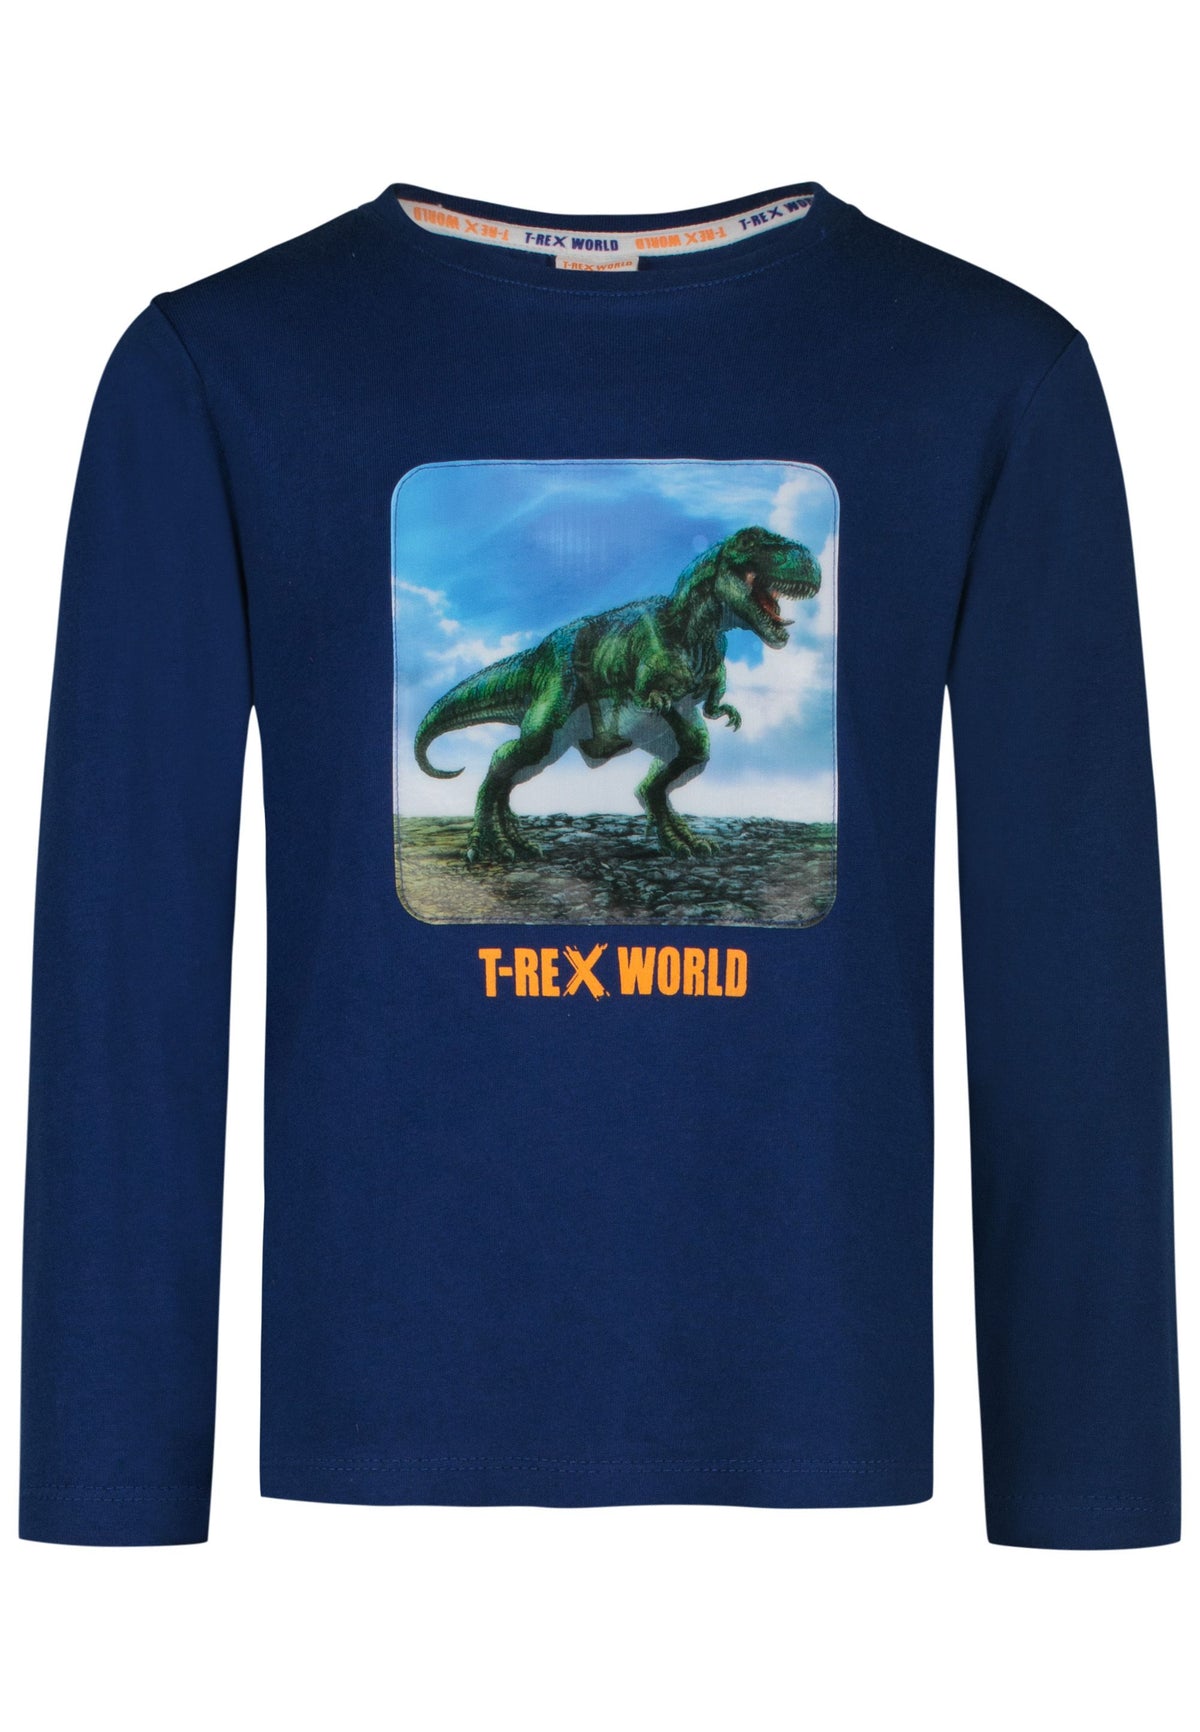 Jungen Langarm Shirt Hologram Print T-Rex 25813705 Navy